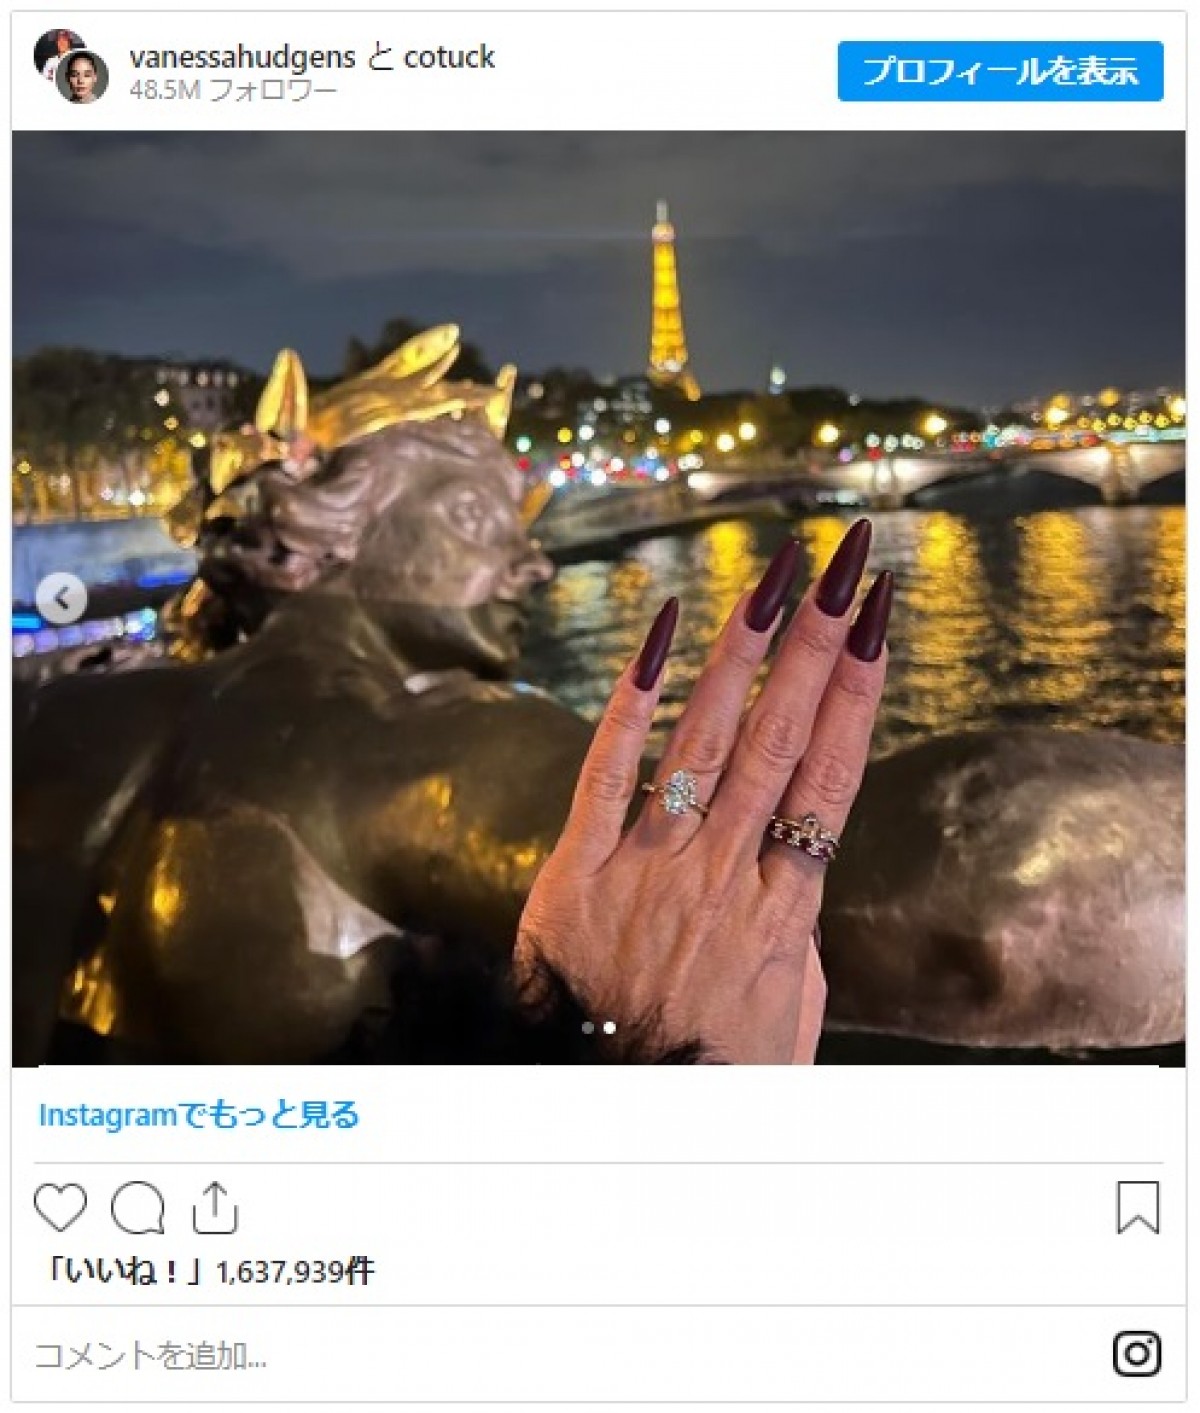 ヴァネッサ・ハジェンズが婚約を公表　ダイヤのリングをお披露目